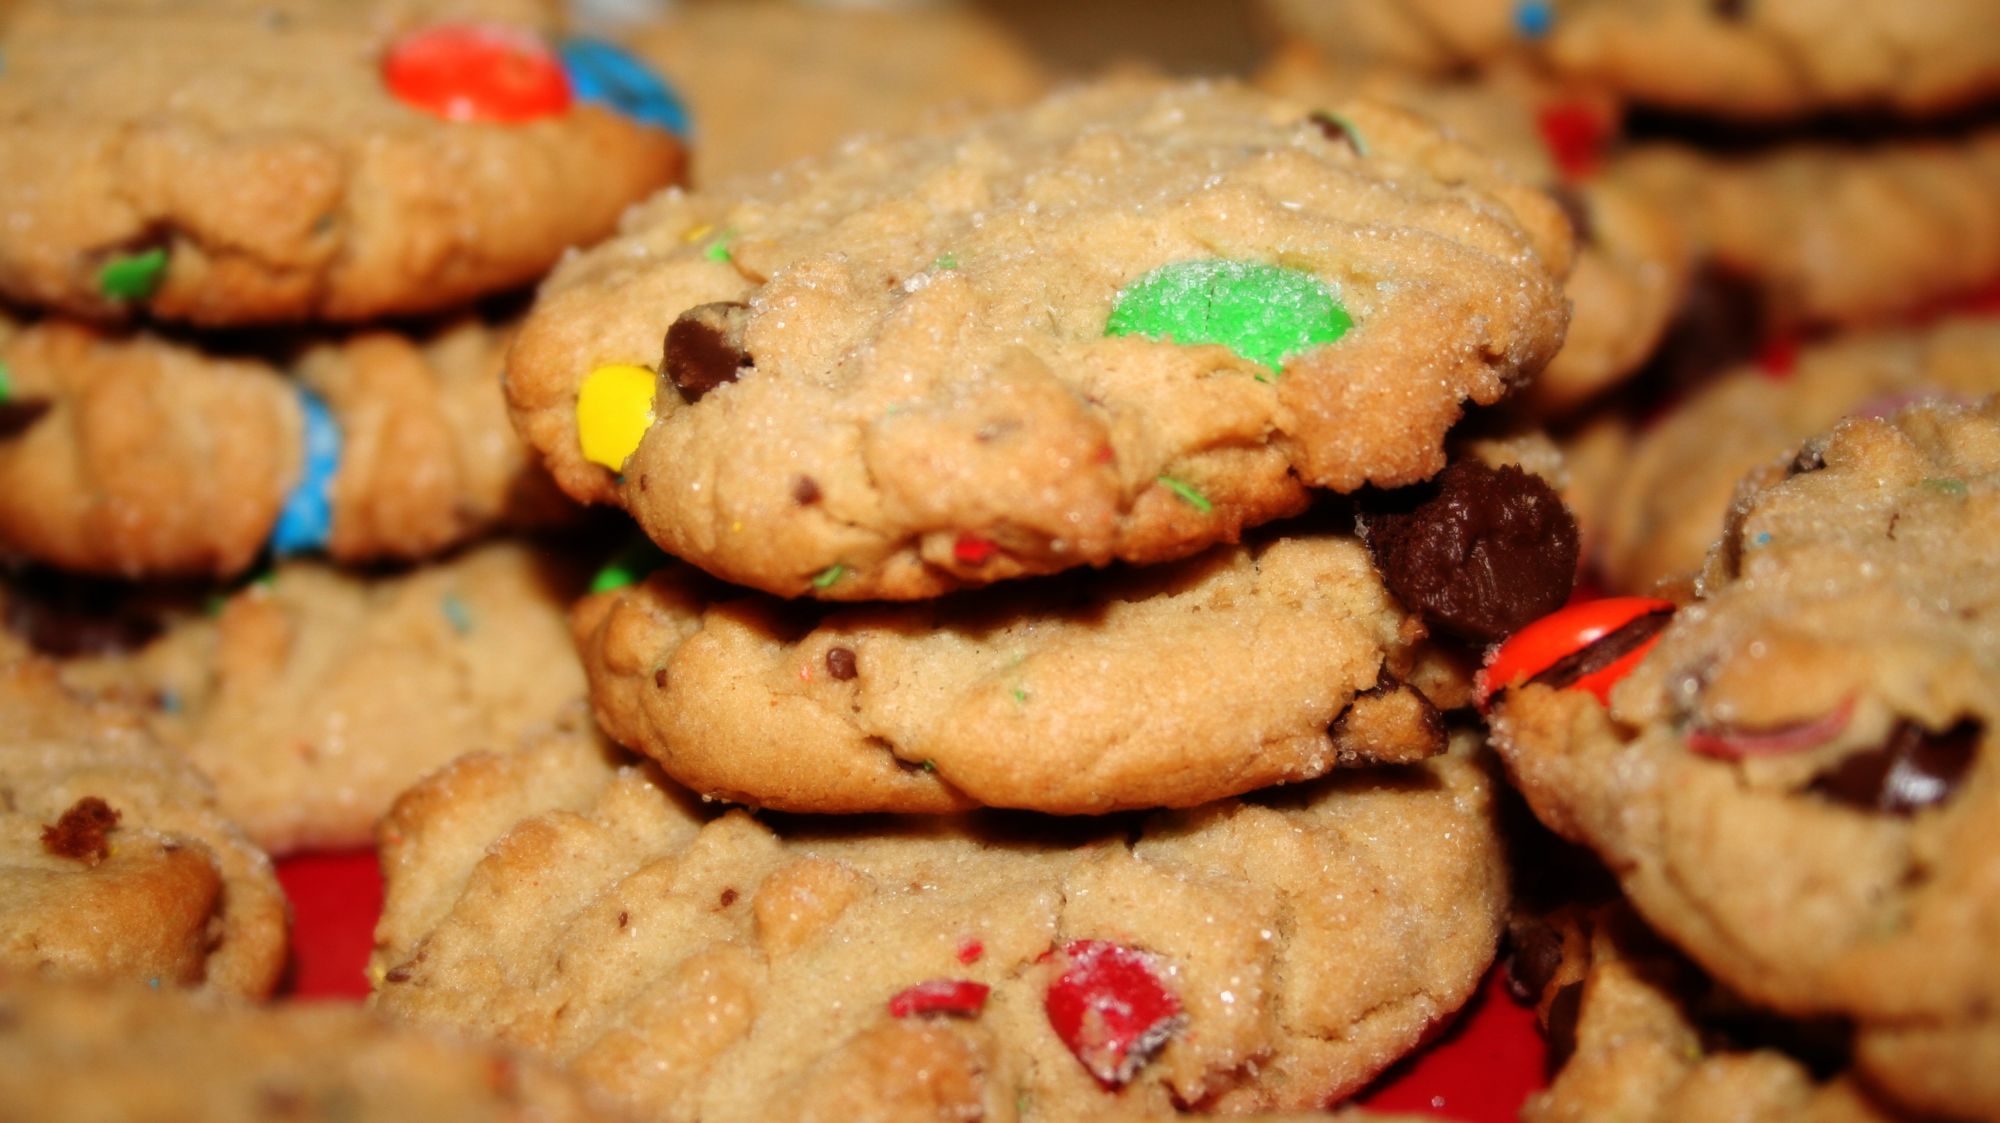 Image cookies